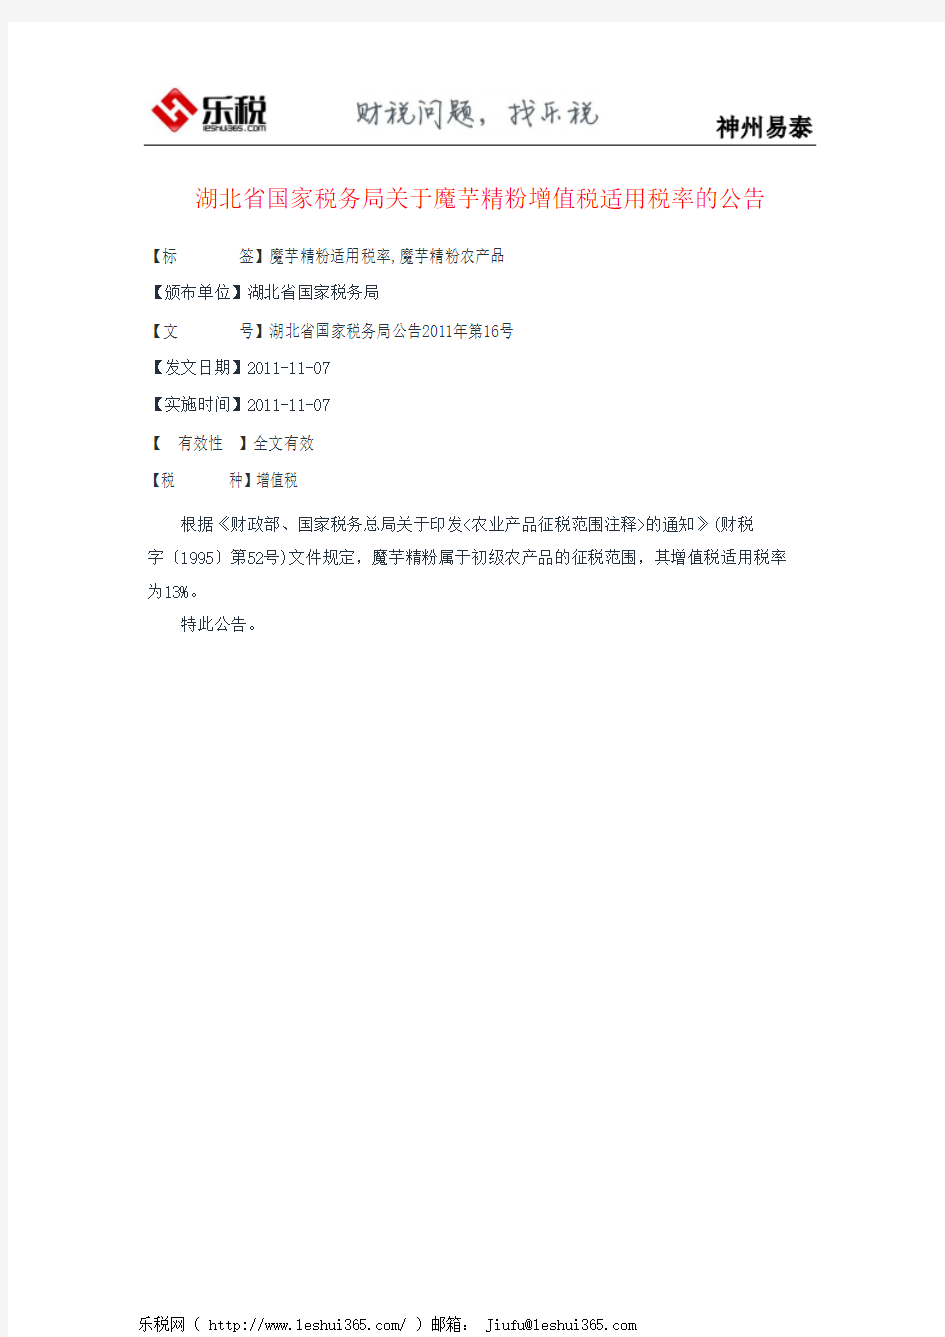 湖北省国家税务局关于魔芋精粉增值税适用税率的公告